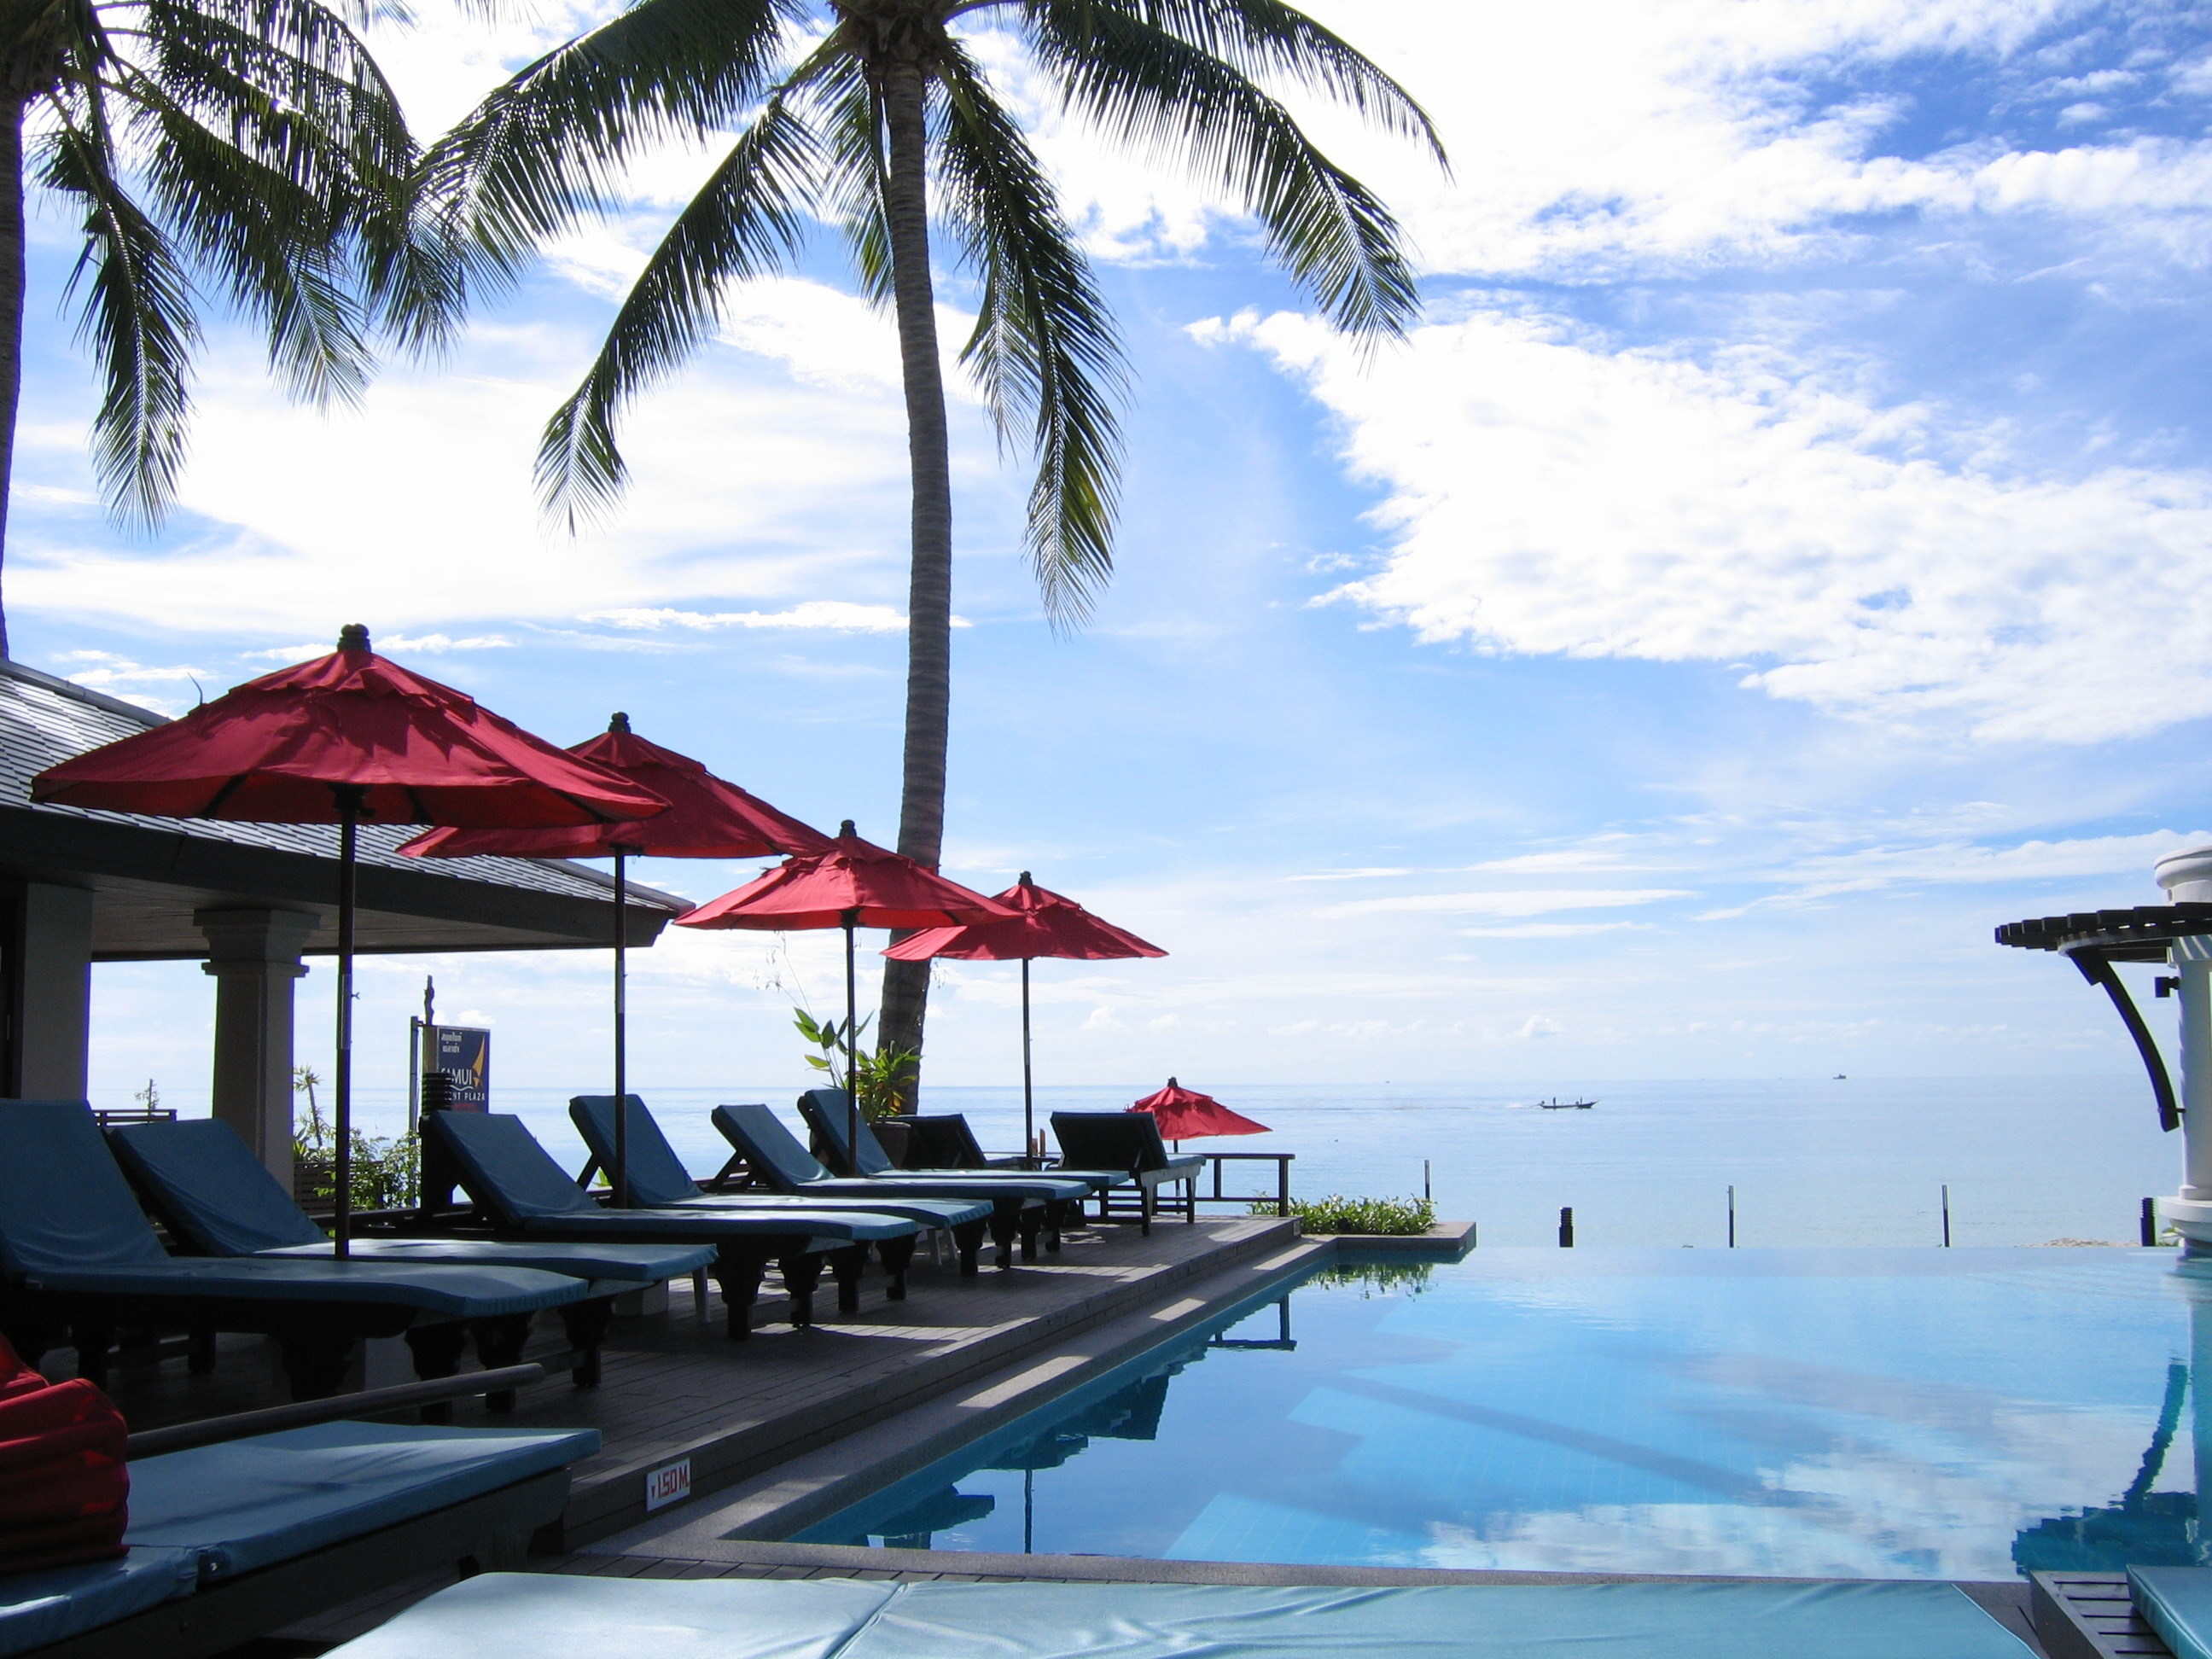 泰国苏梅岛 查汶丽晶海滩度假酒店chaweng-regent-beach-resort – 爱岛人 海岛旅行专家